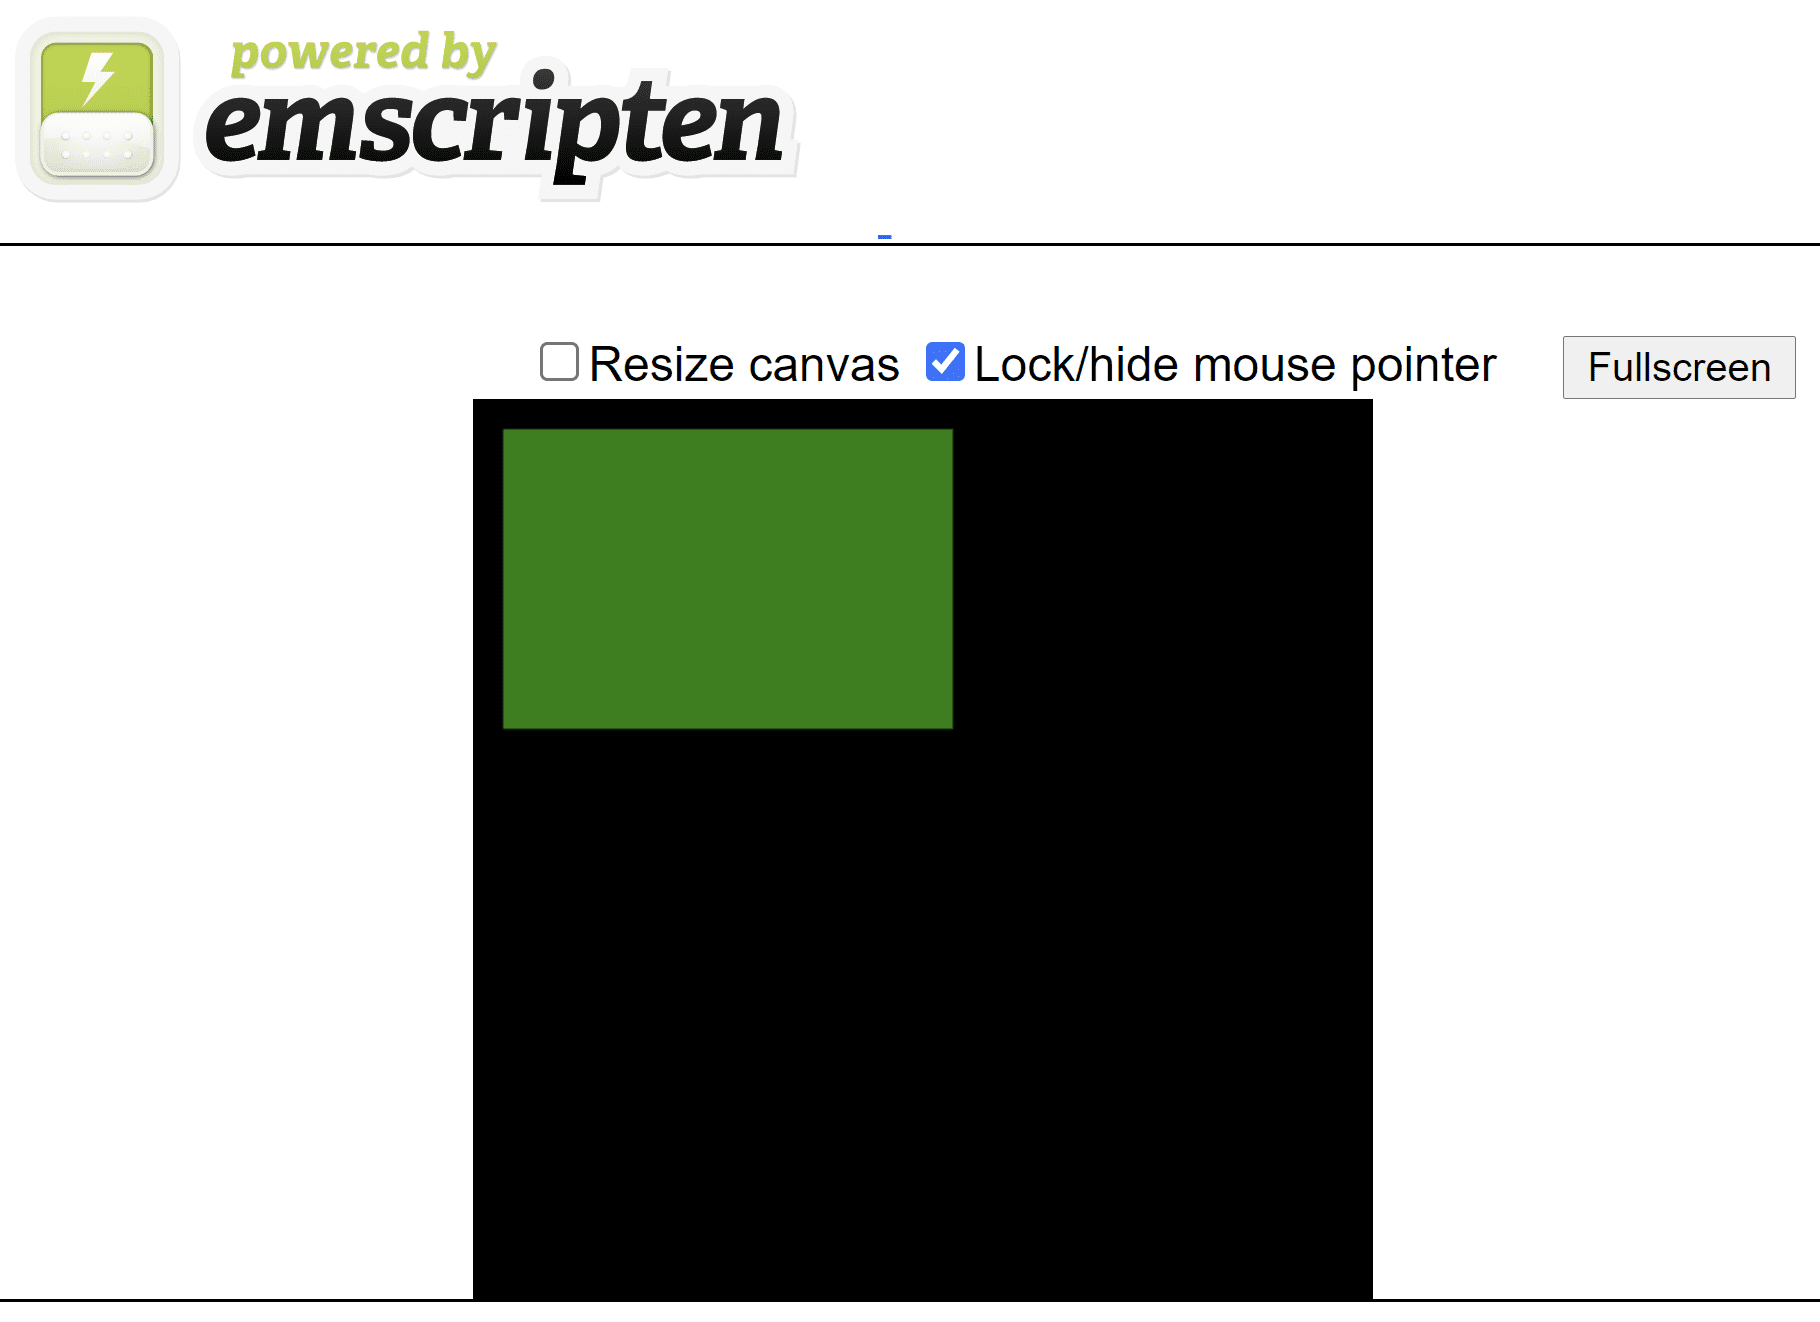 由 Emscripten 生成的 HTML 网页，在黑色正方形画布上显示一个绿色矩形。